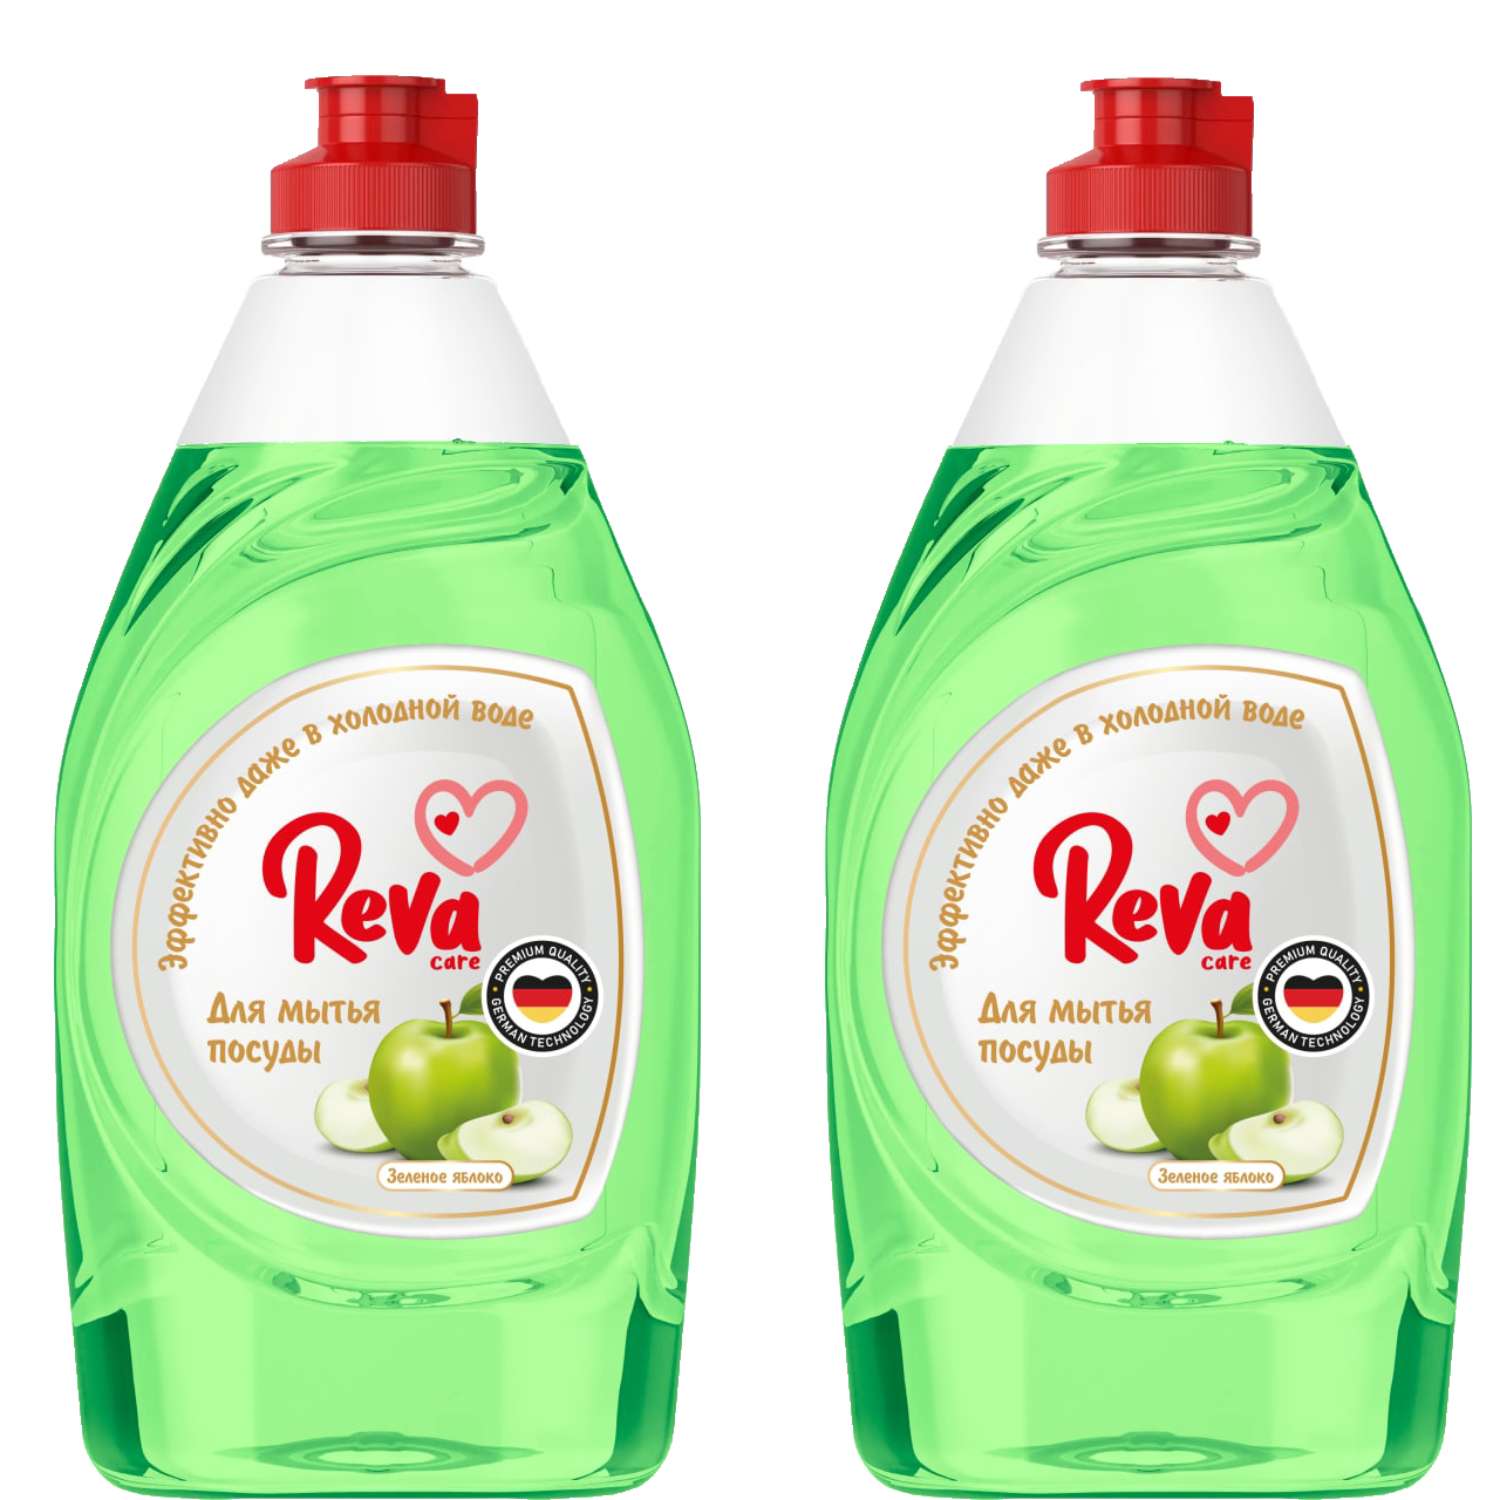 Средство для посуды Reva Care Dishwash с ароматом Яблока 2 упаковки по 450 мл - фото 1